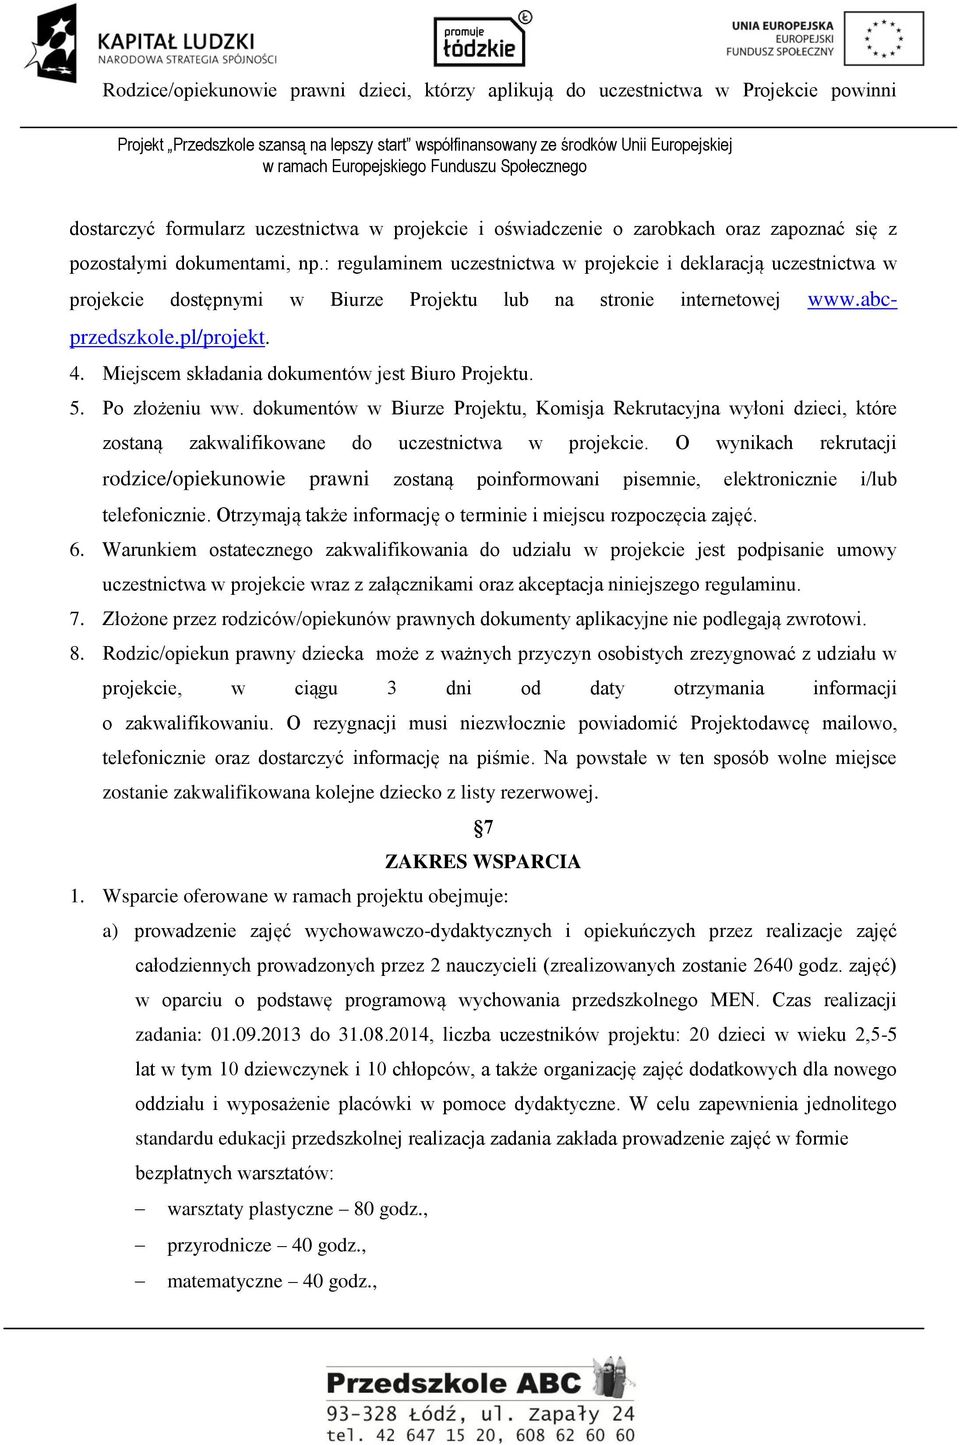 : regulaminem uczestnictwa w projekcie i deklaracją uczestnictwa w projekcie dostępnymi w Biurze Projektu lub na stronie internetowej www.abcprzedszkole.pl/projekt. 4.